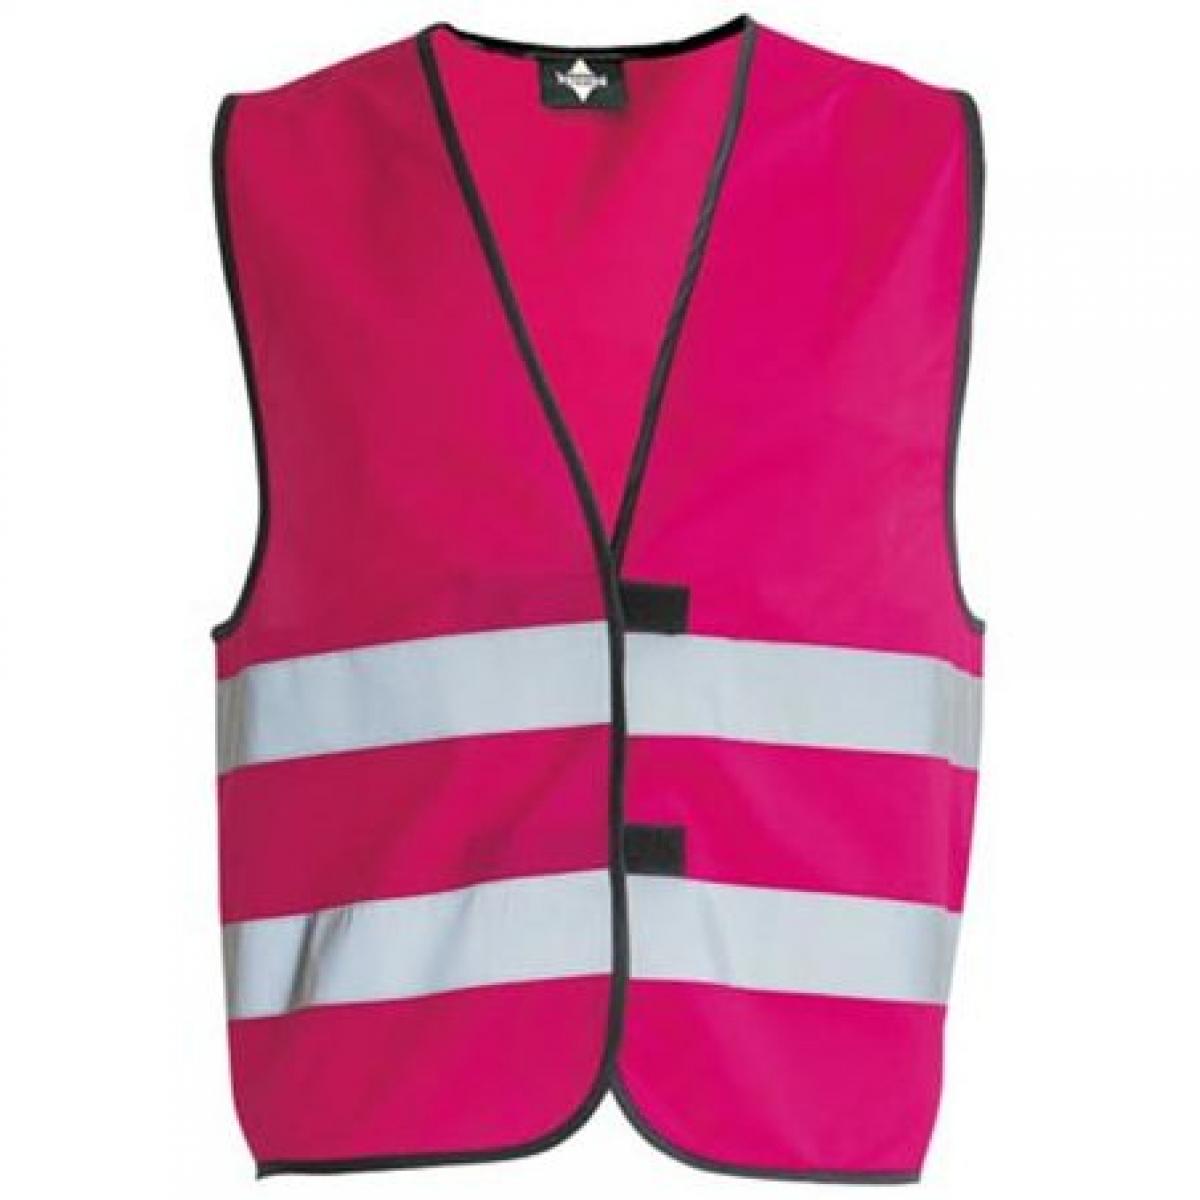 Hersteller: Korntex Herstellernummer: KW100 Artikelbezeichnung: Kinderweste Children´s Safety Vest Farbe: Magenta